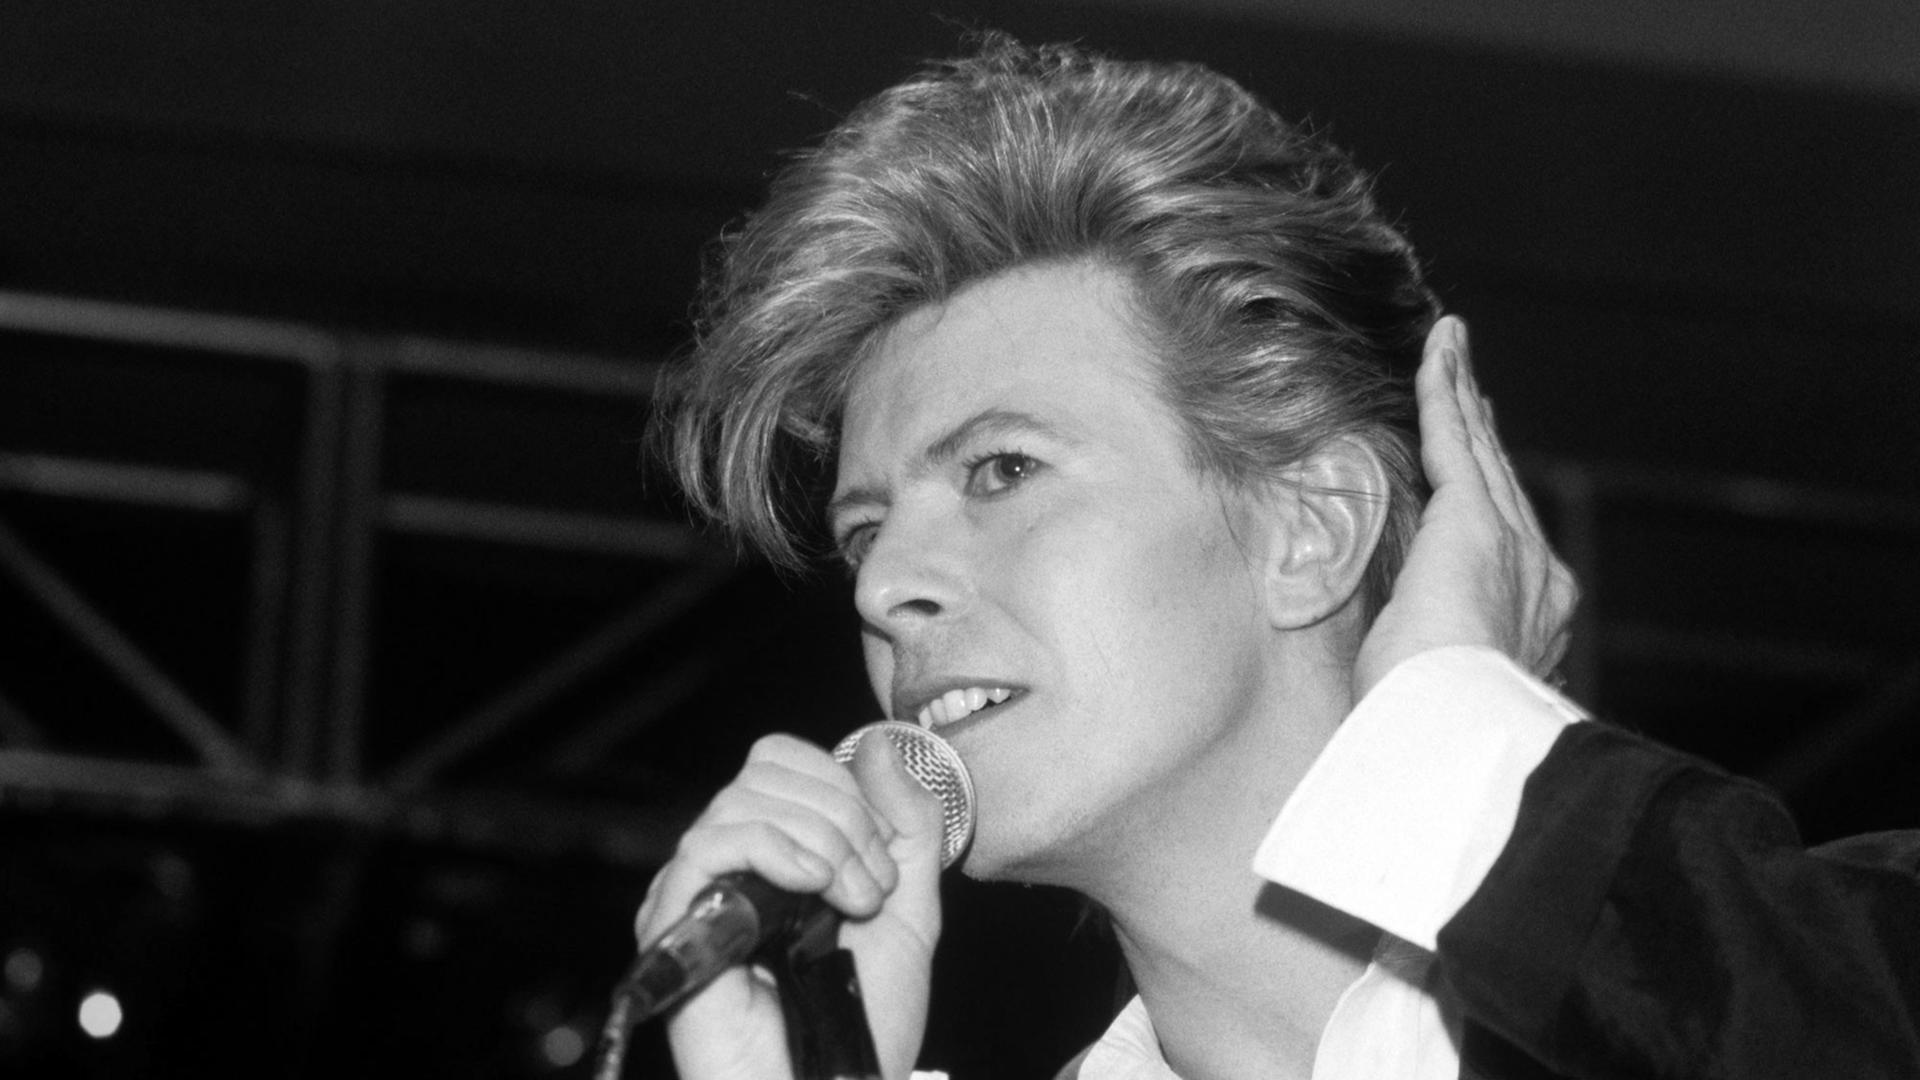 Rockmusiker David Bowie während seines Auftritts am 26.03.1987 in München